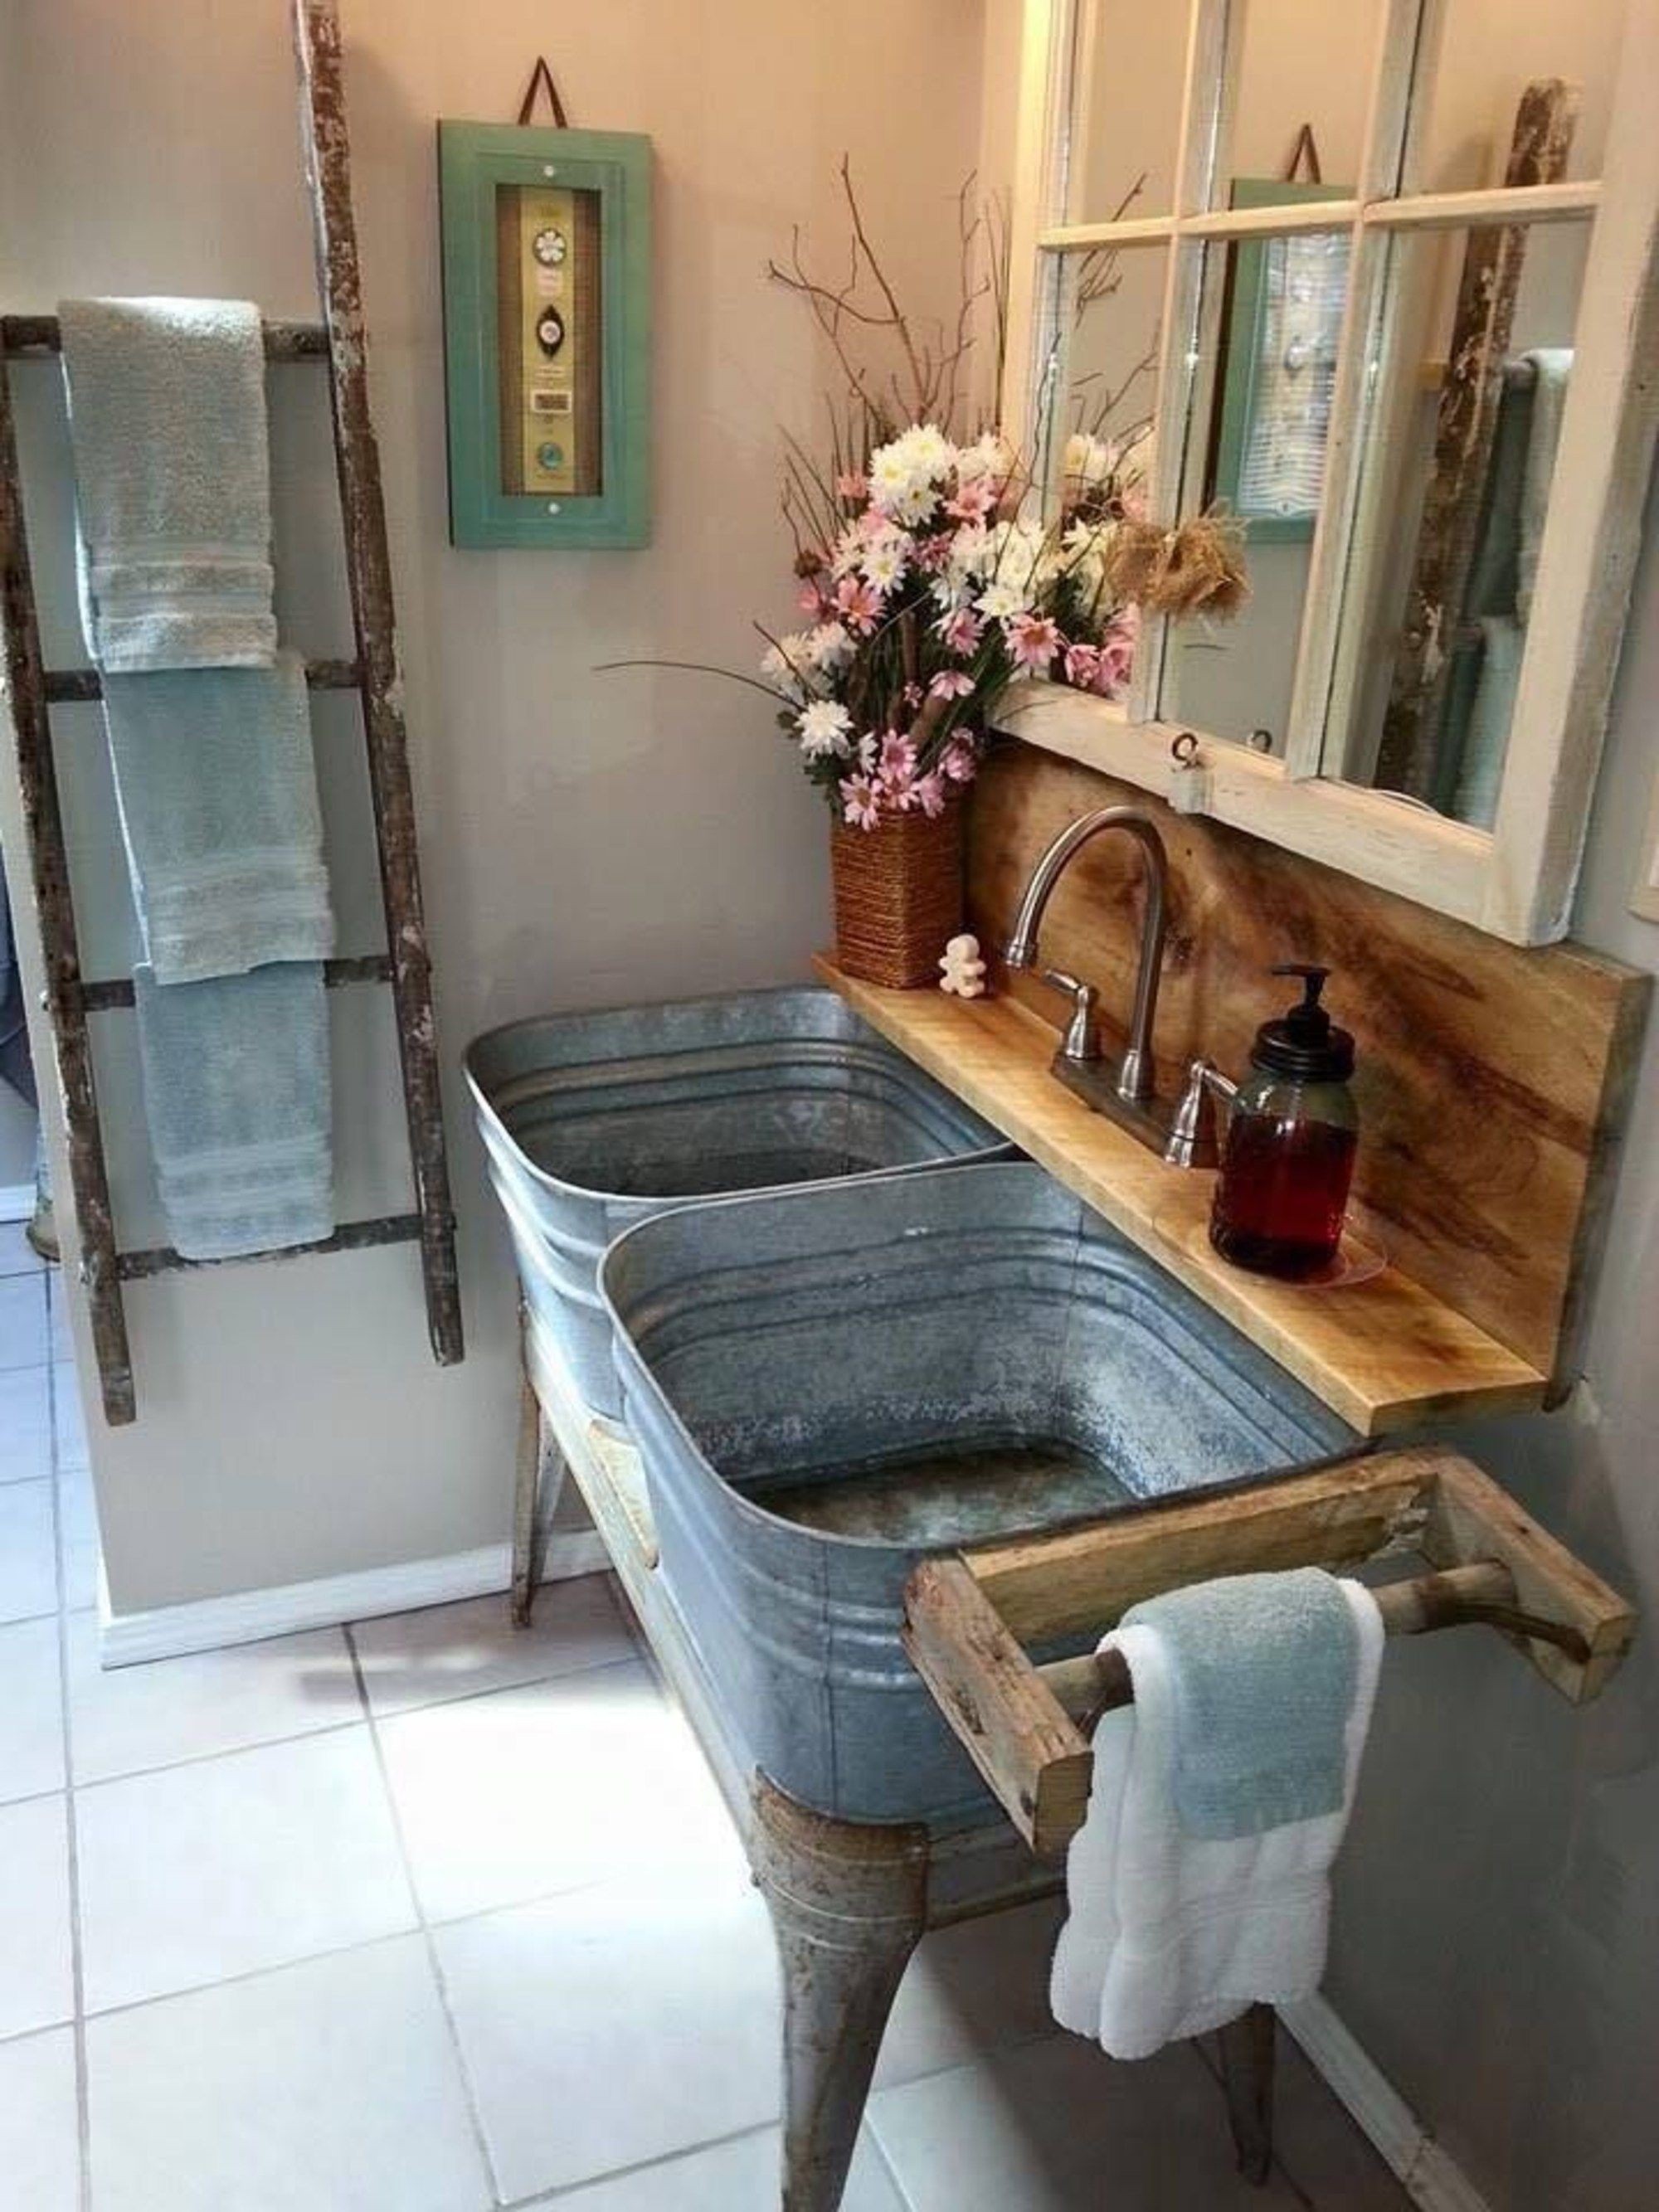 Galvanized wash tub sink